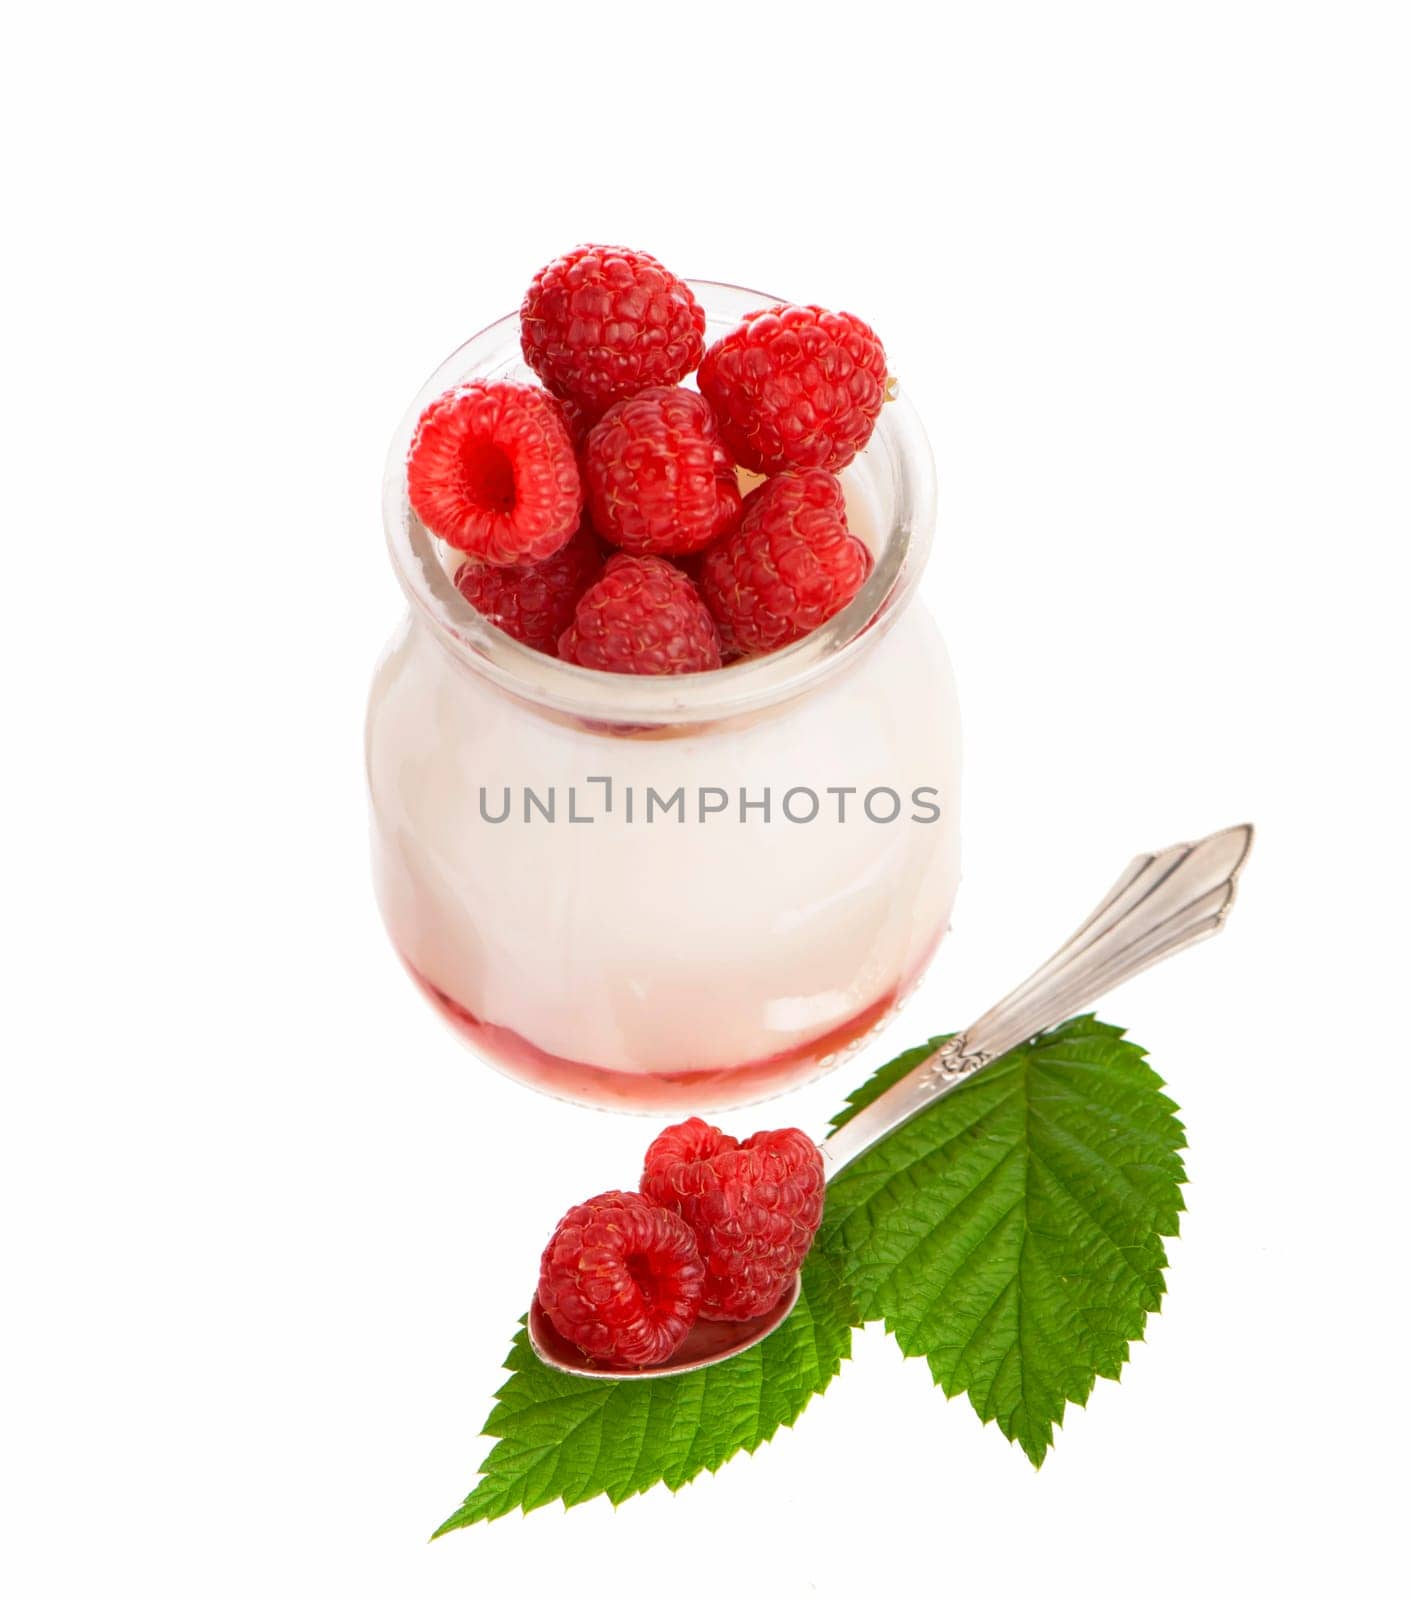 Fresh Yogurt in a jar with Raspberries, leaves on white background